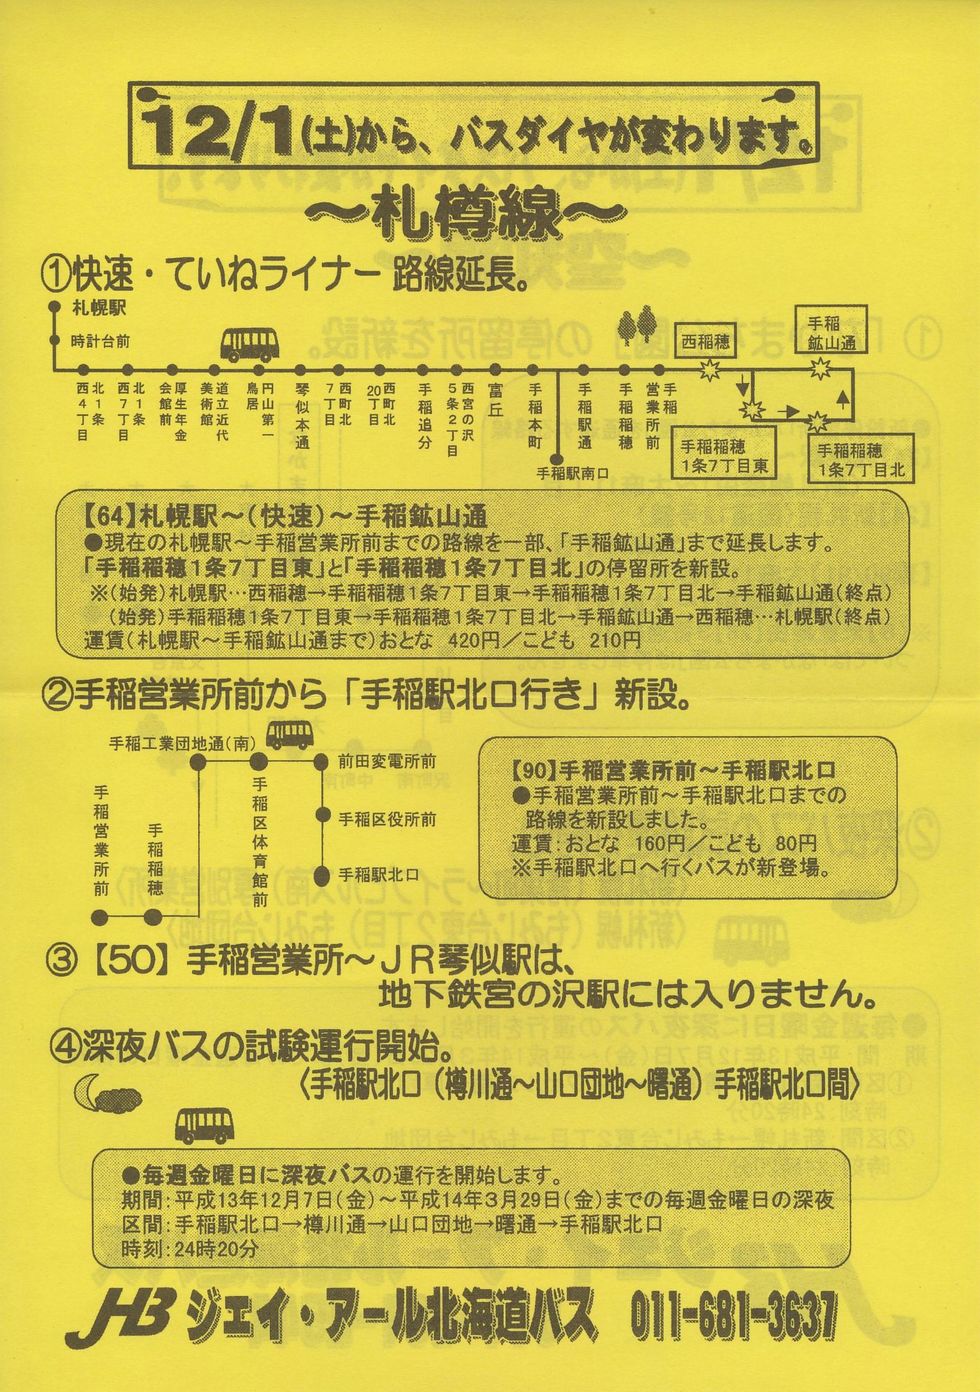 2001-12-01改正_ジェイ・アール北海道バス_札樽線・空知線ダイヤ改正チラシ表面